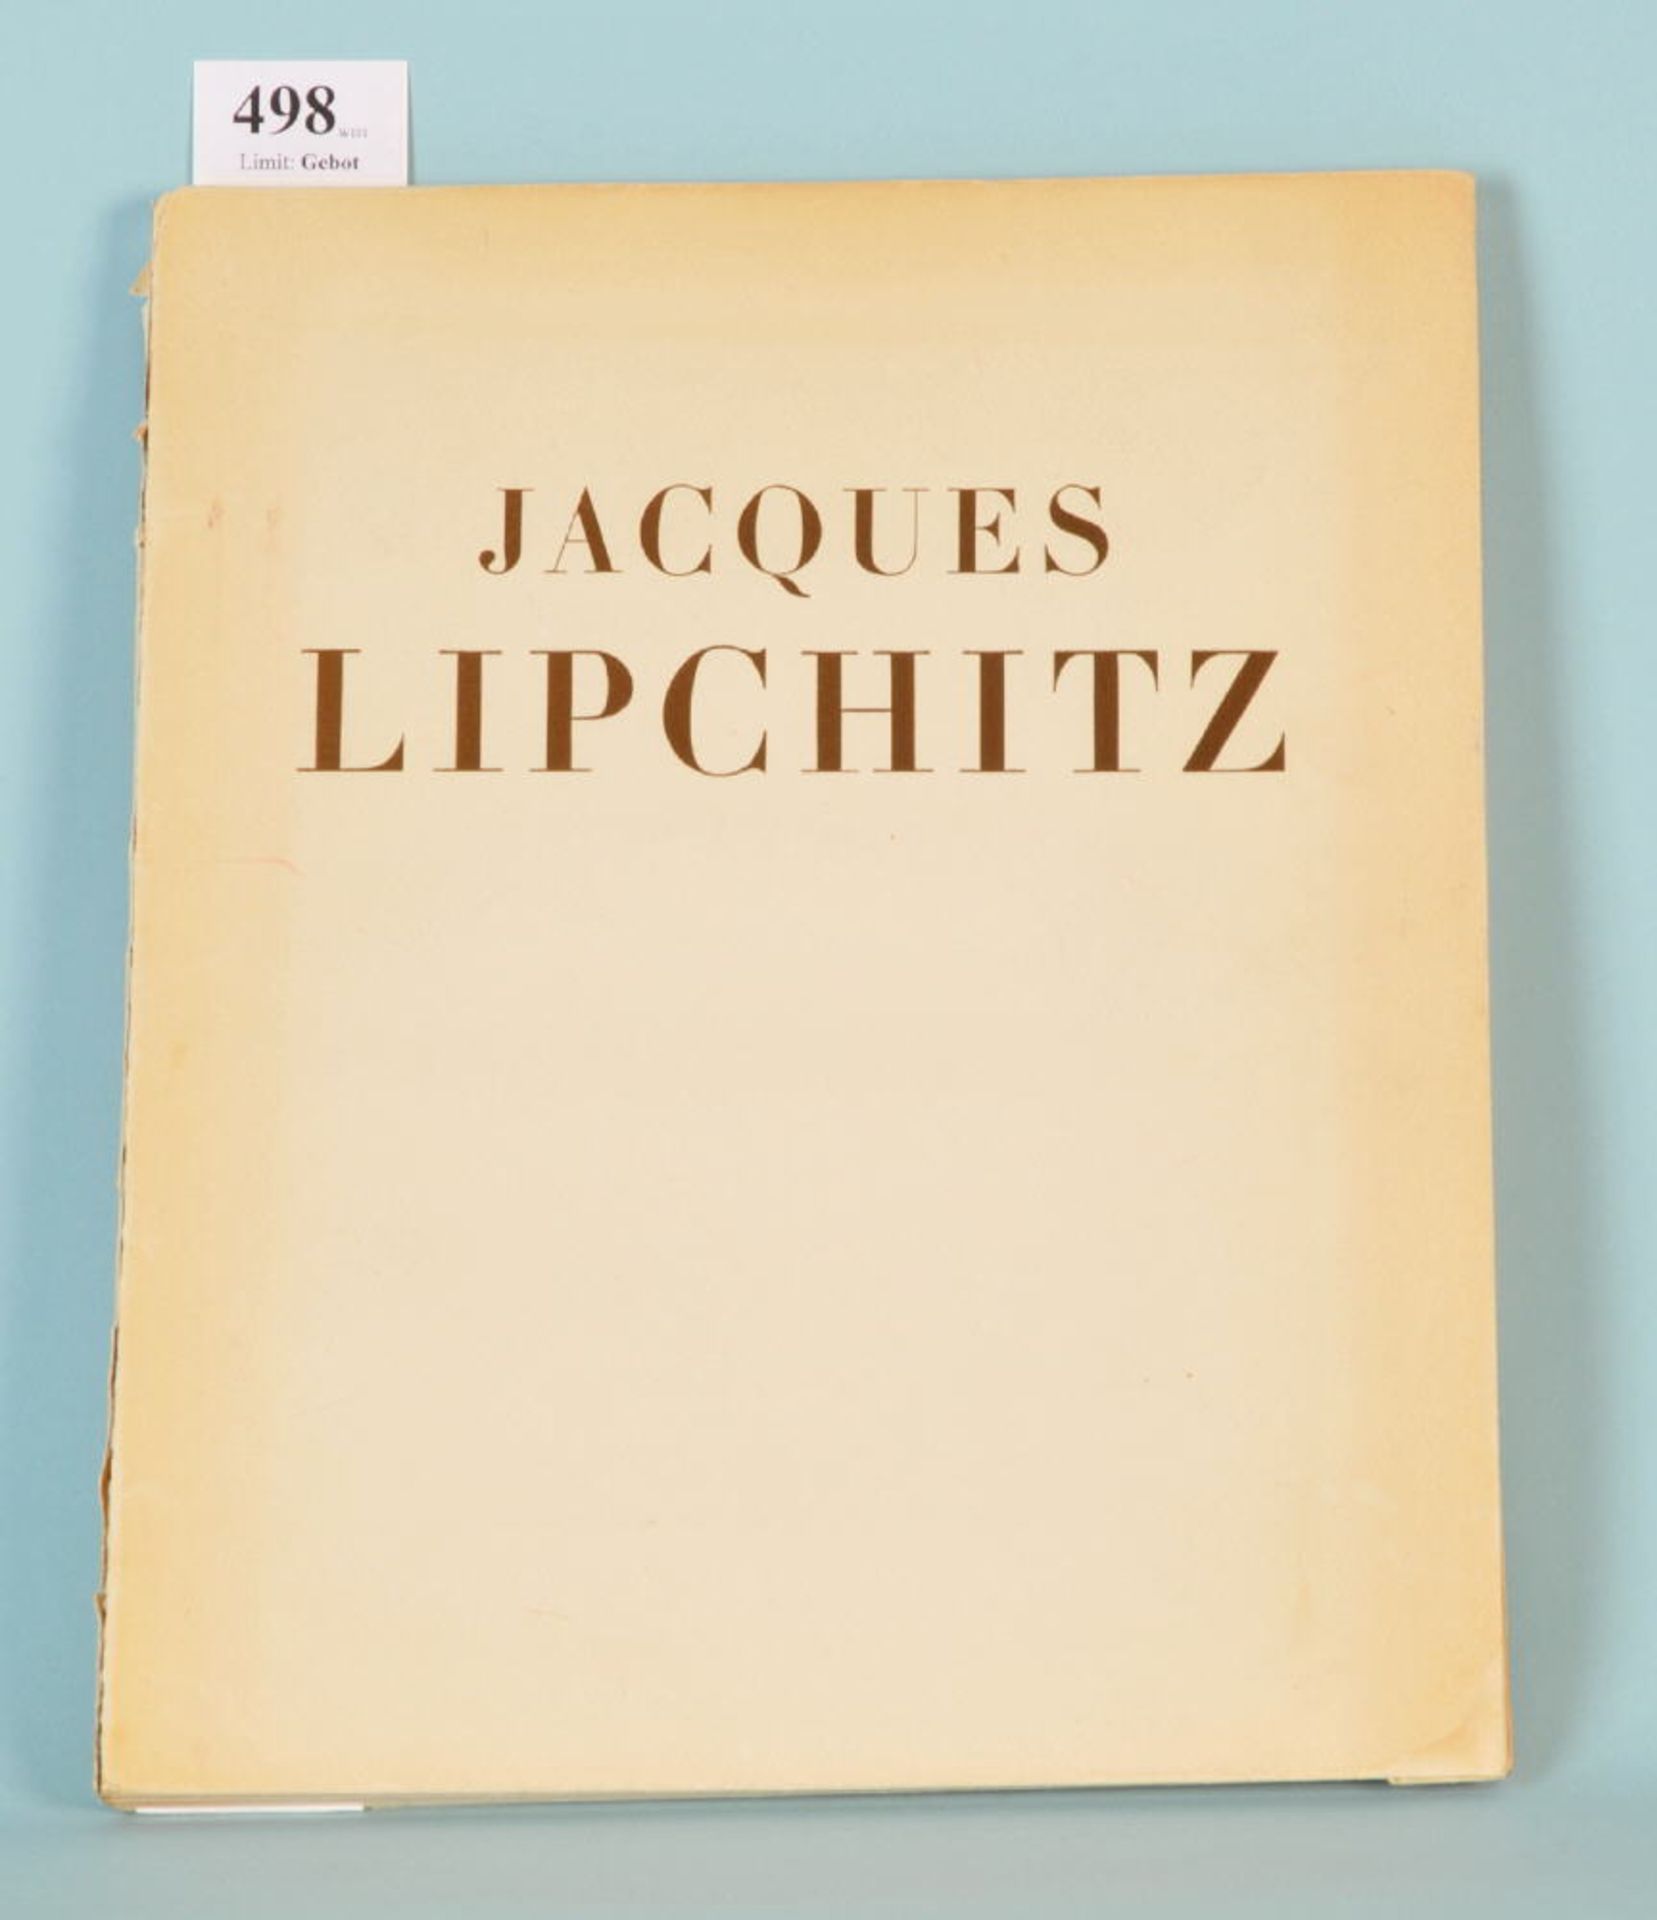 Raynal, Maurice "Jacques Lipchitz"französ. Sprache, zahlr. Bildtafeln, bei J. Bucher, Paris, 1947,